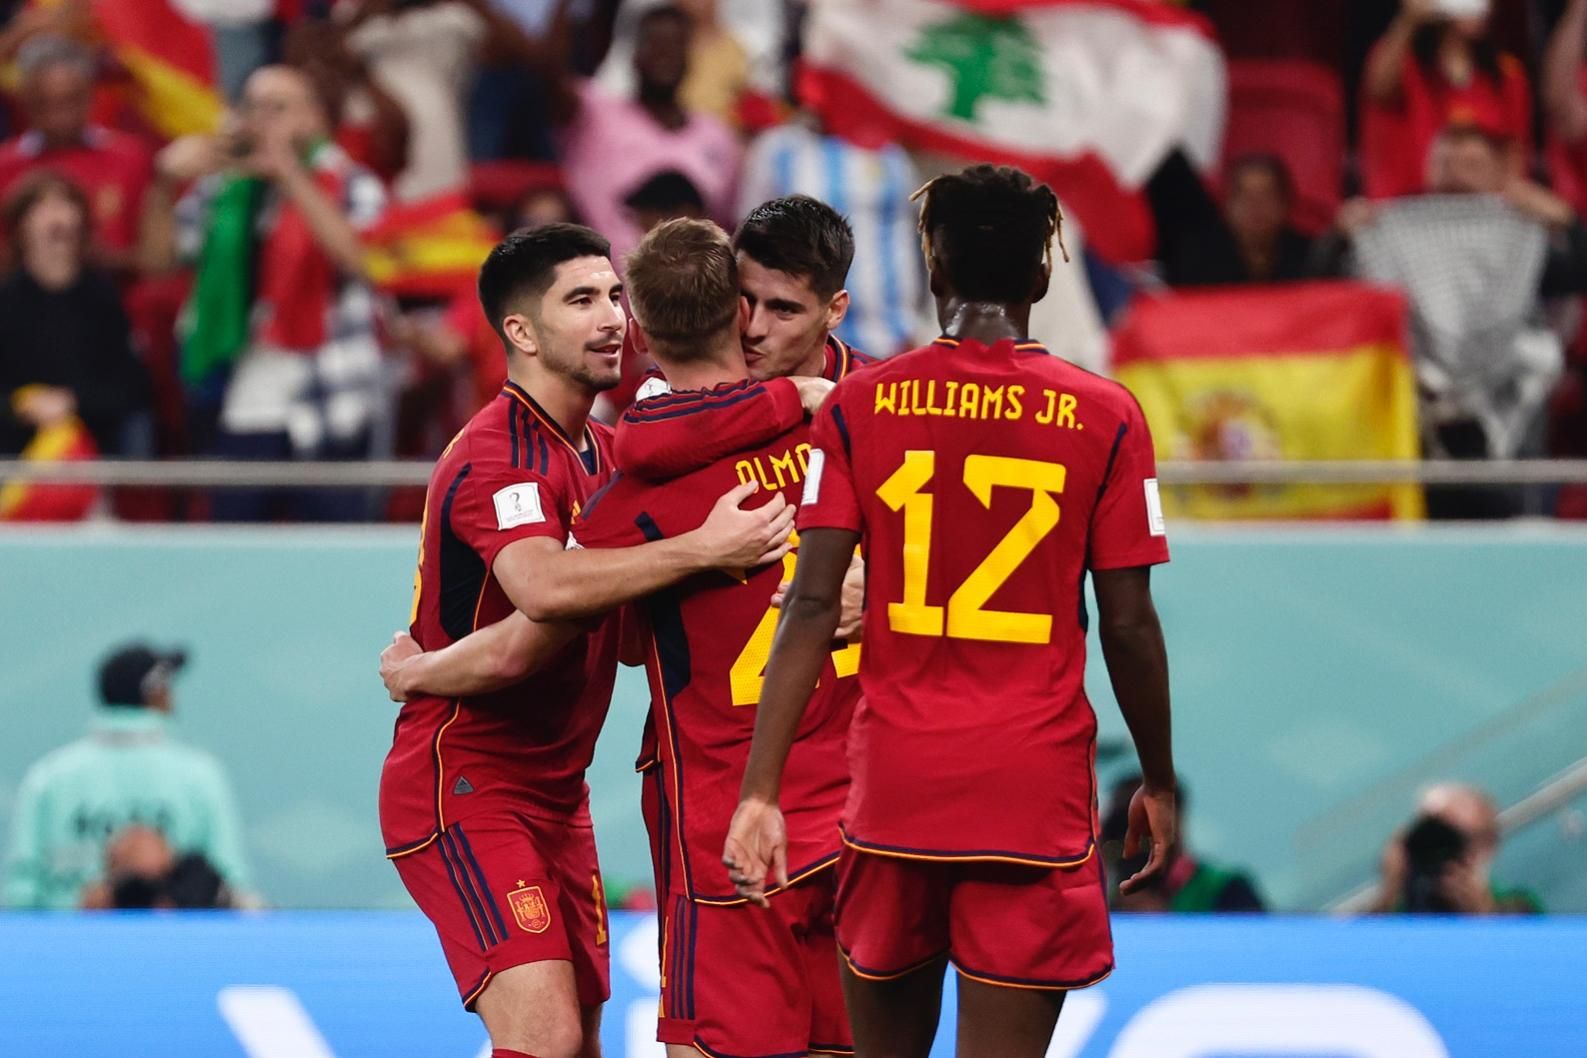 Jovens da Espanha brilham e goleiam Costa Rica na estreia da Copa do Mundo